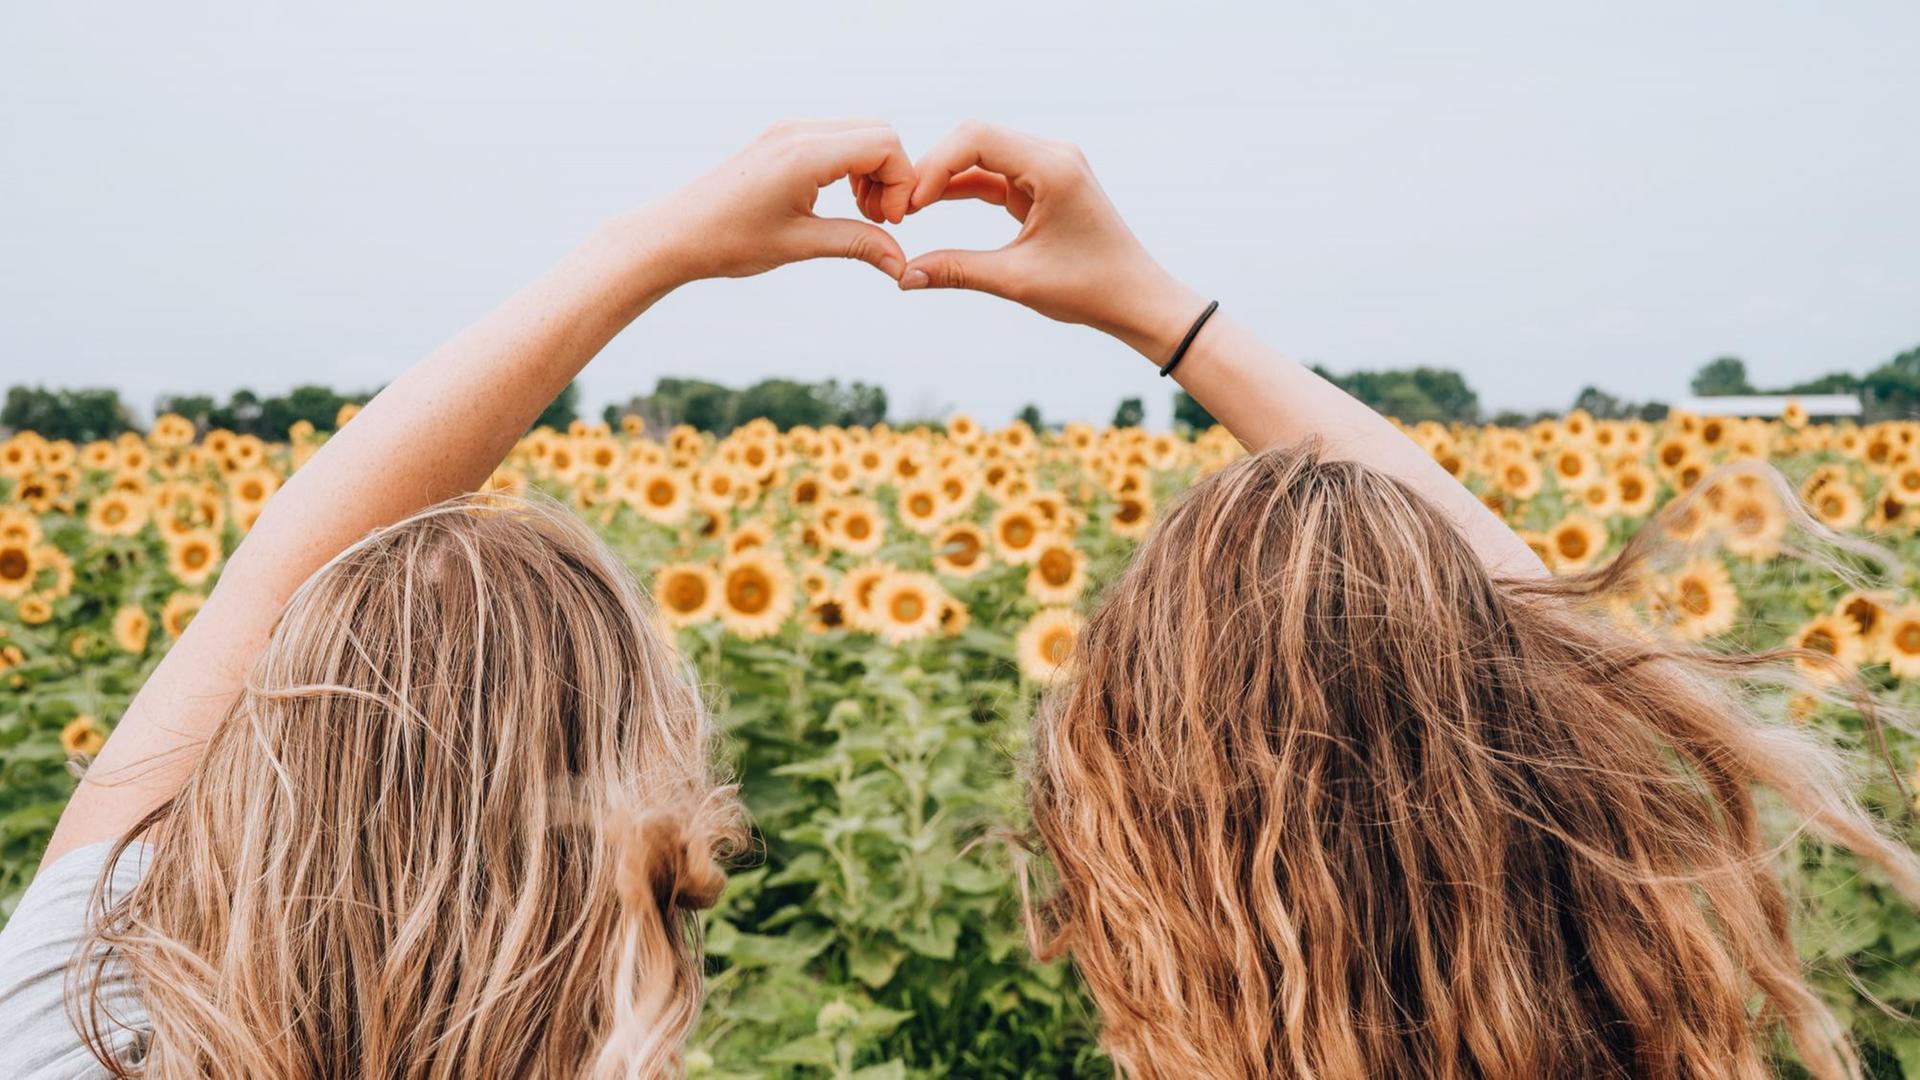 Zwei Mädchen sind von hinten in einem Sonnenblumenfeld zu sehen, ihre Hände formen zusammen ein Herz.